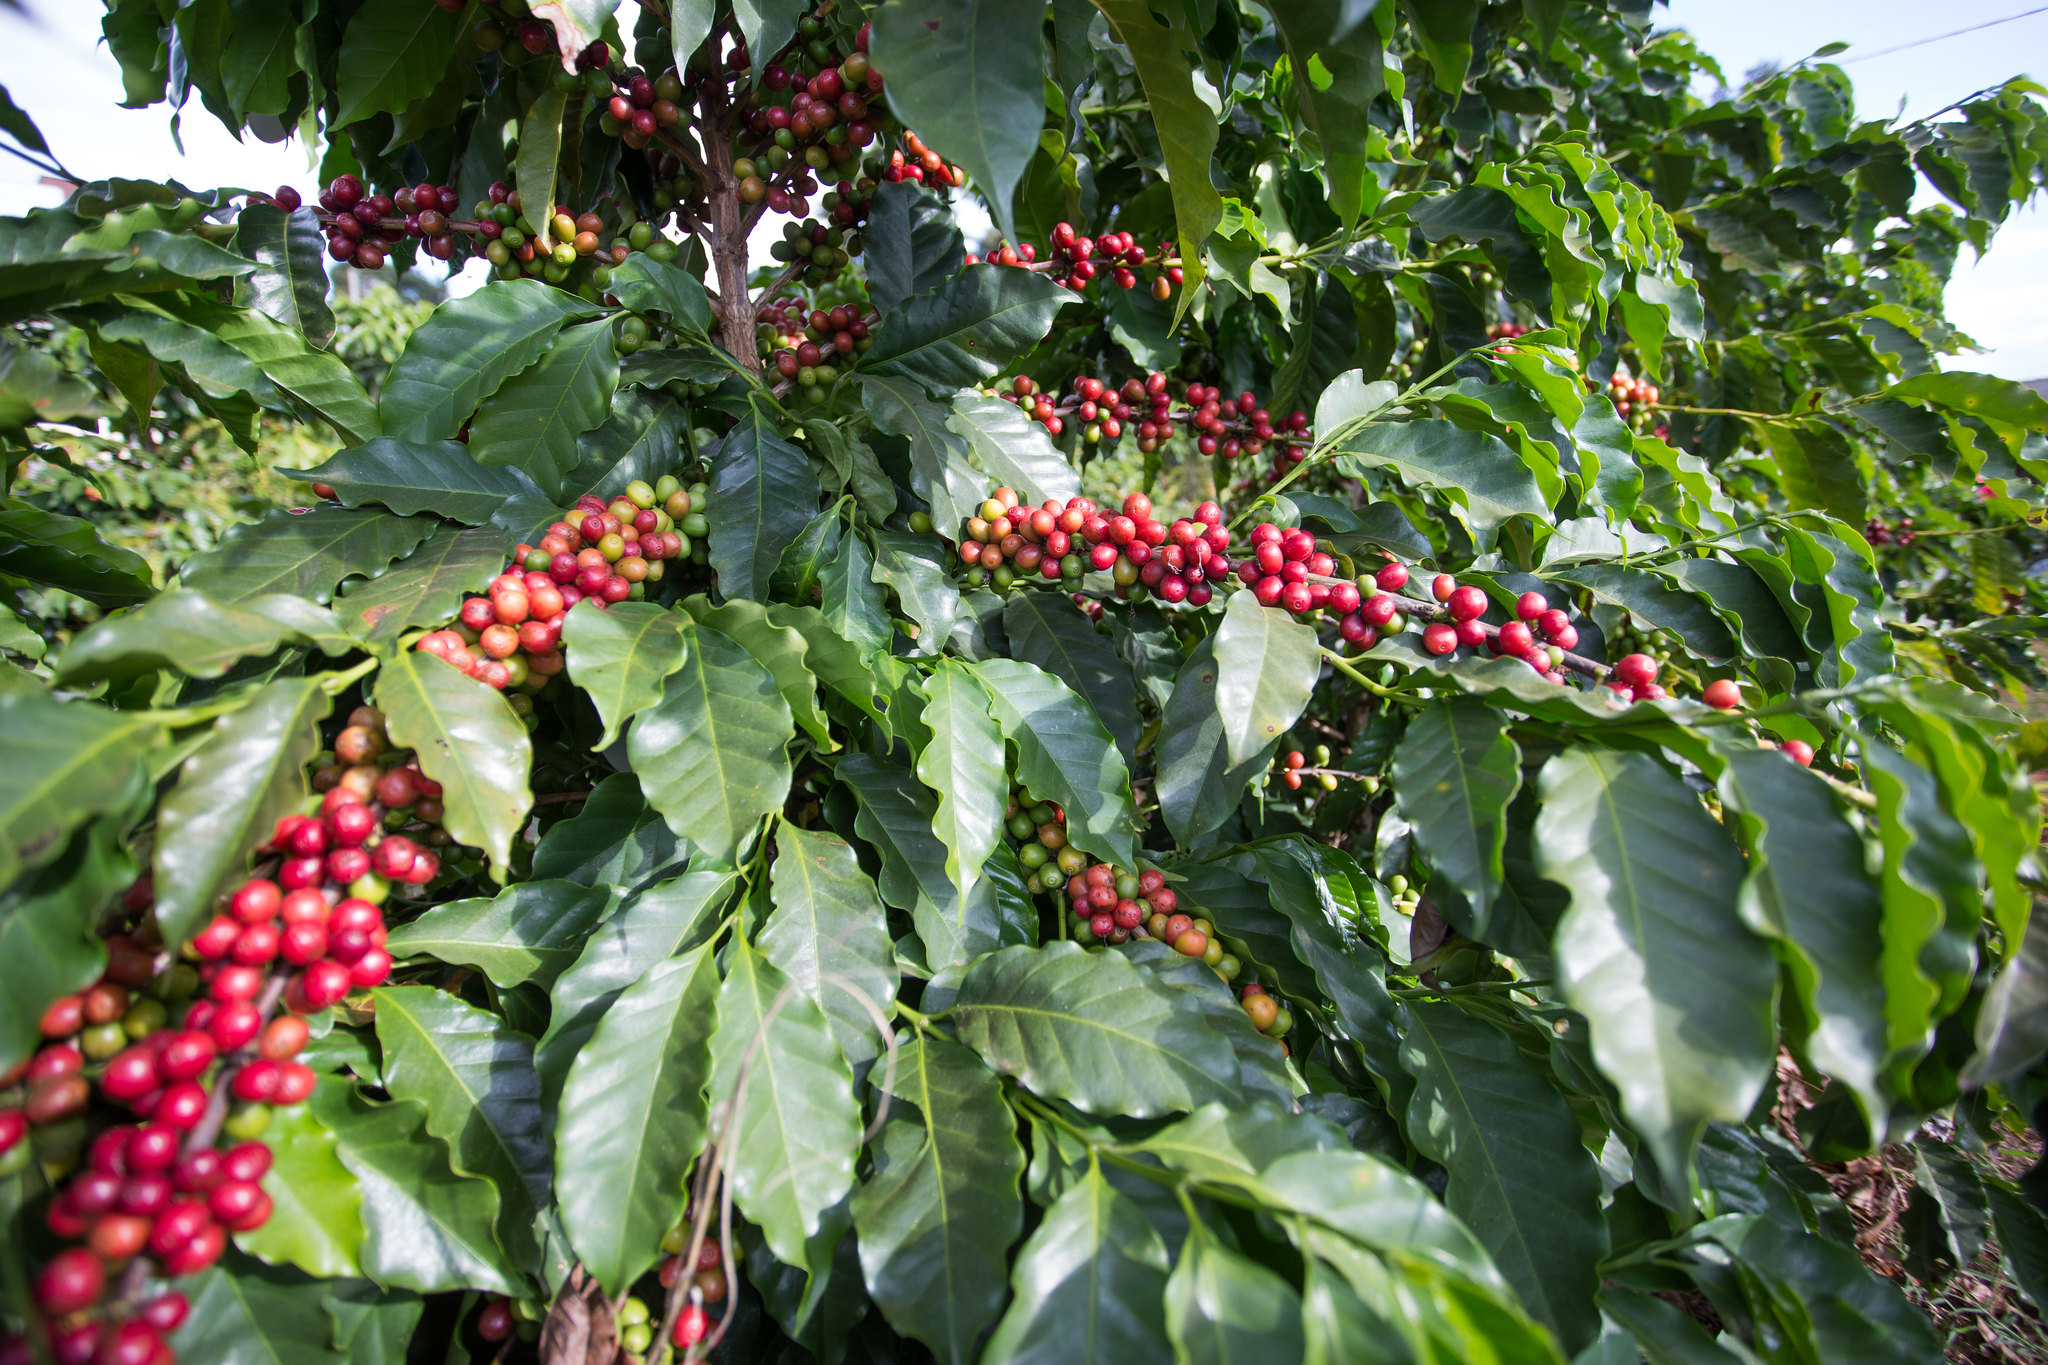 Safra total de café de 2022 foi estimada em 50,38 milhões de sacas, aumento de 5,6% em relação à 2021